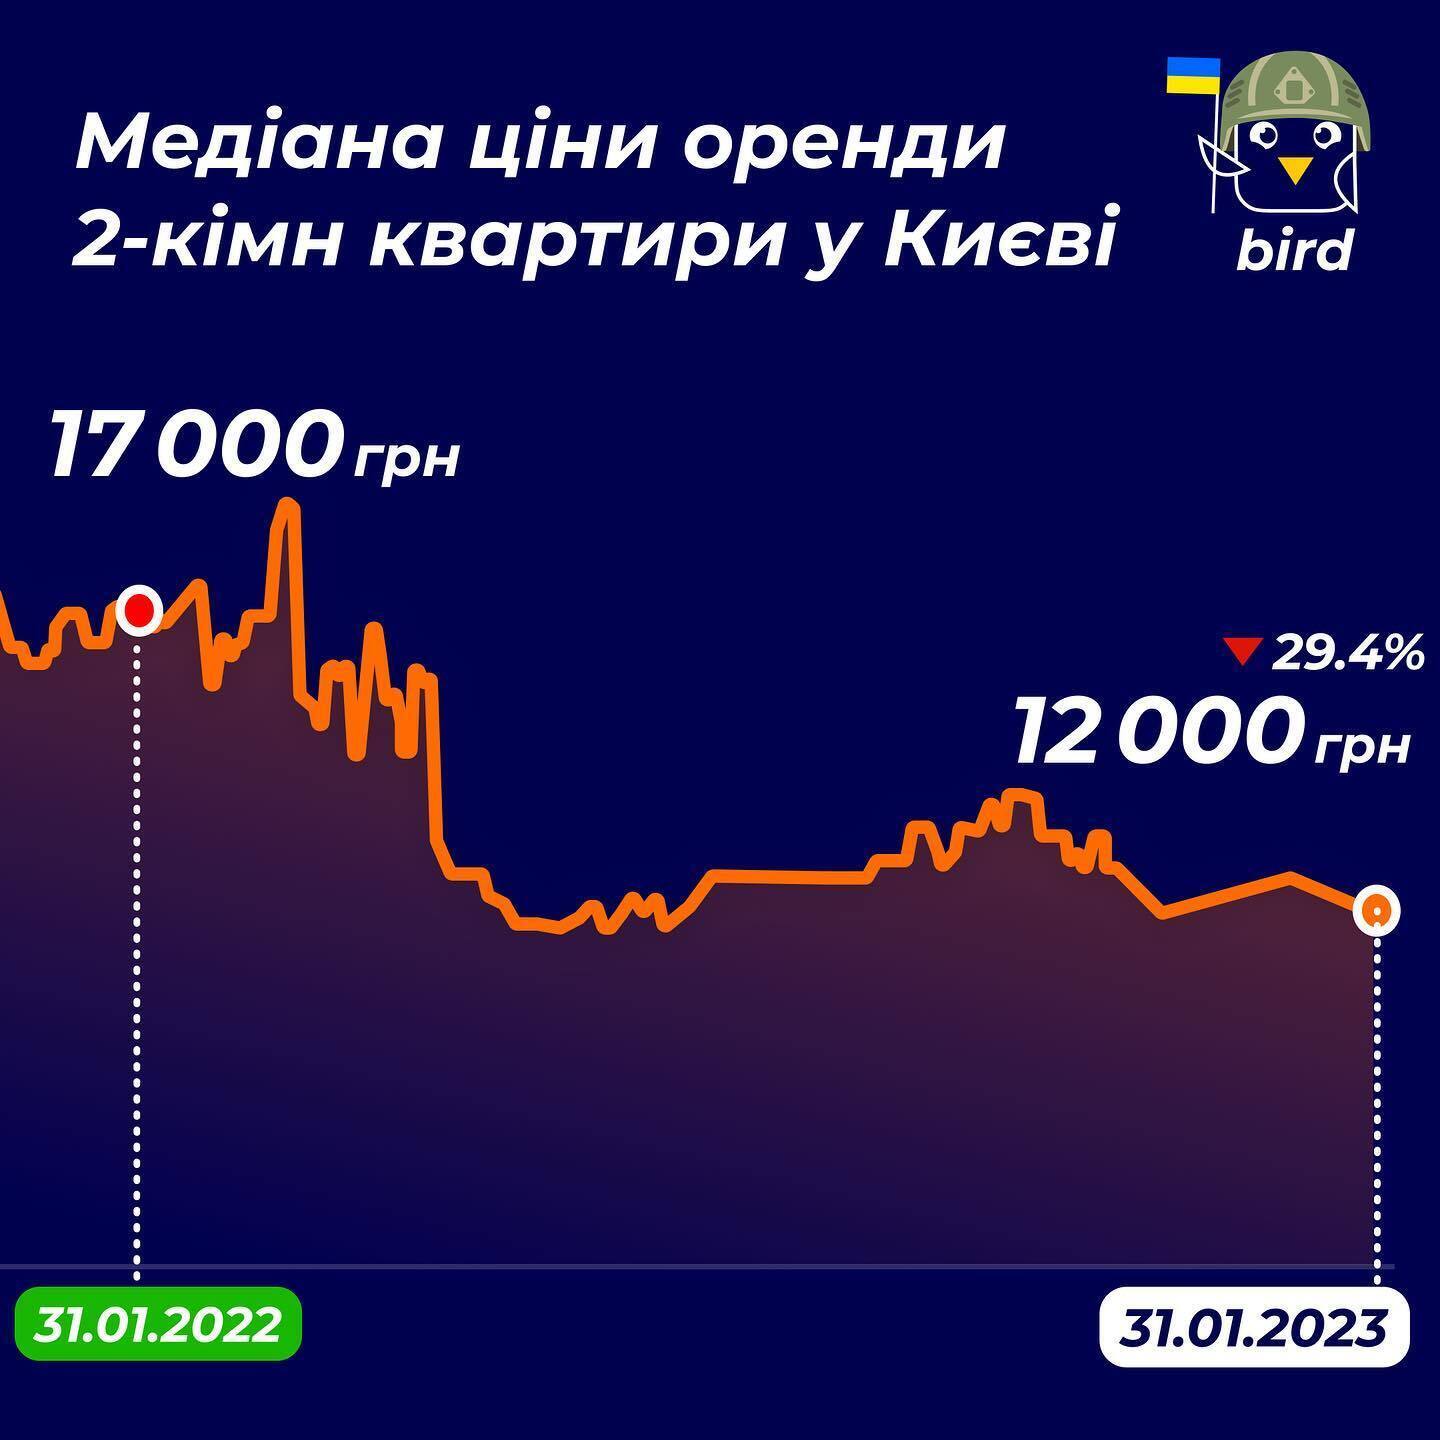 2-комнатные квартиры во Львове сдают в среднем по 16 000 грн, в Киеве – на 4 000 грн дешевле